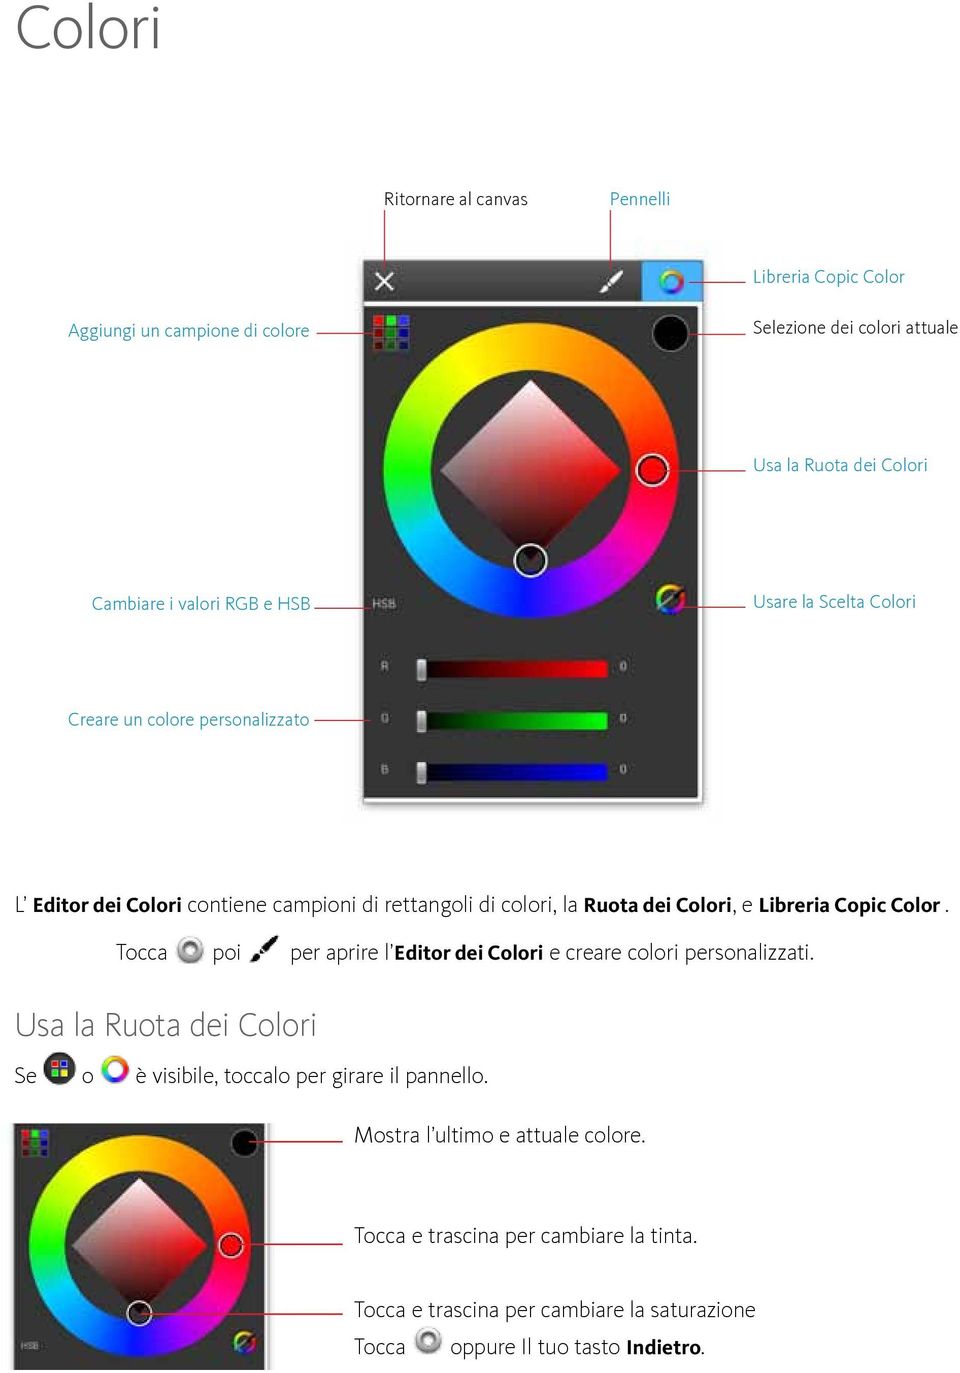 Libreria Copic Color. Tocca poi per aprire l Editor dei Colori e creare colori personalizzati.